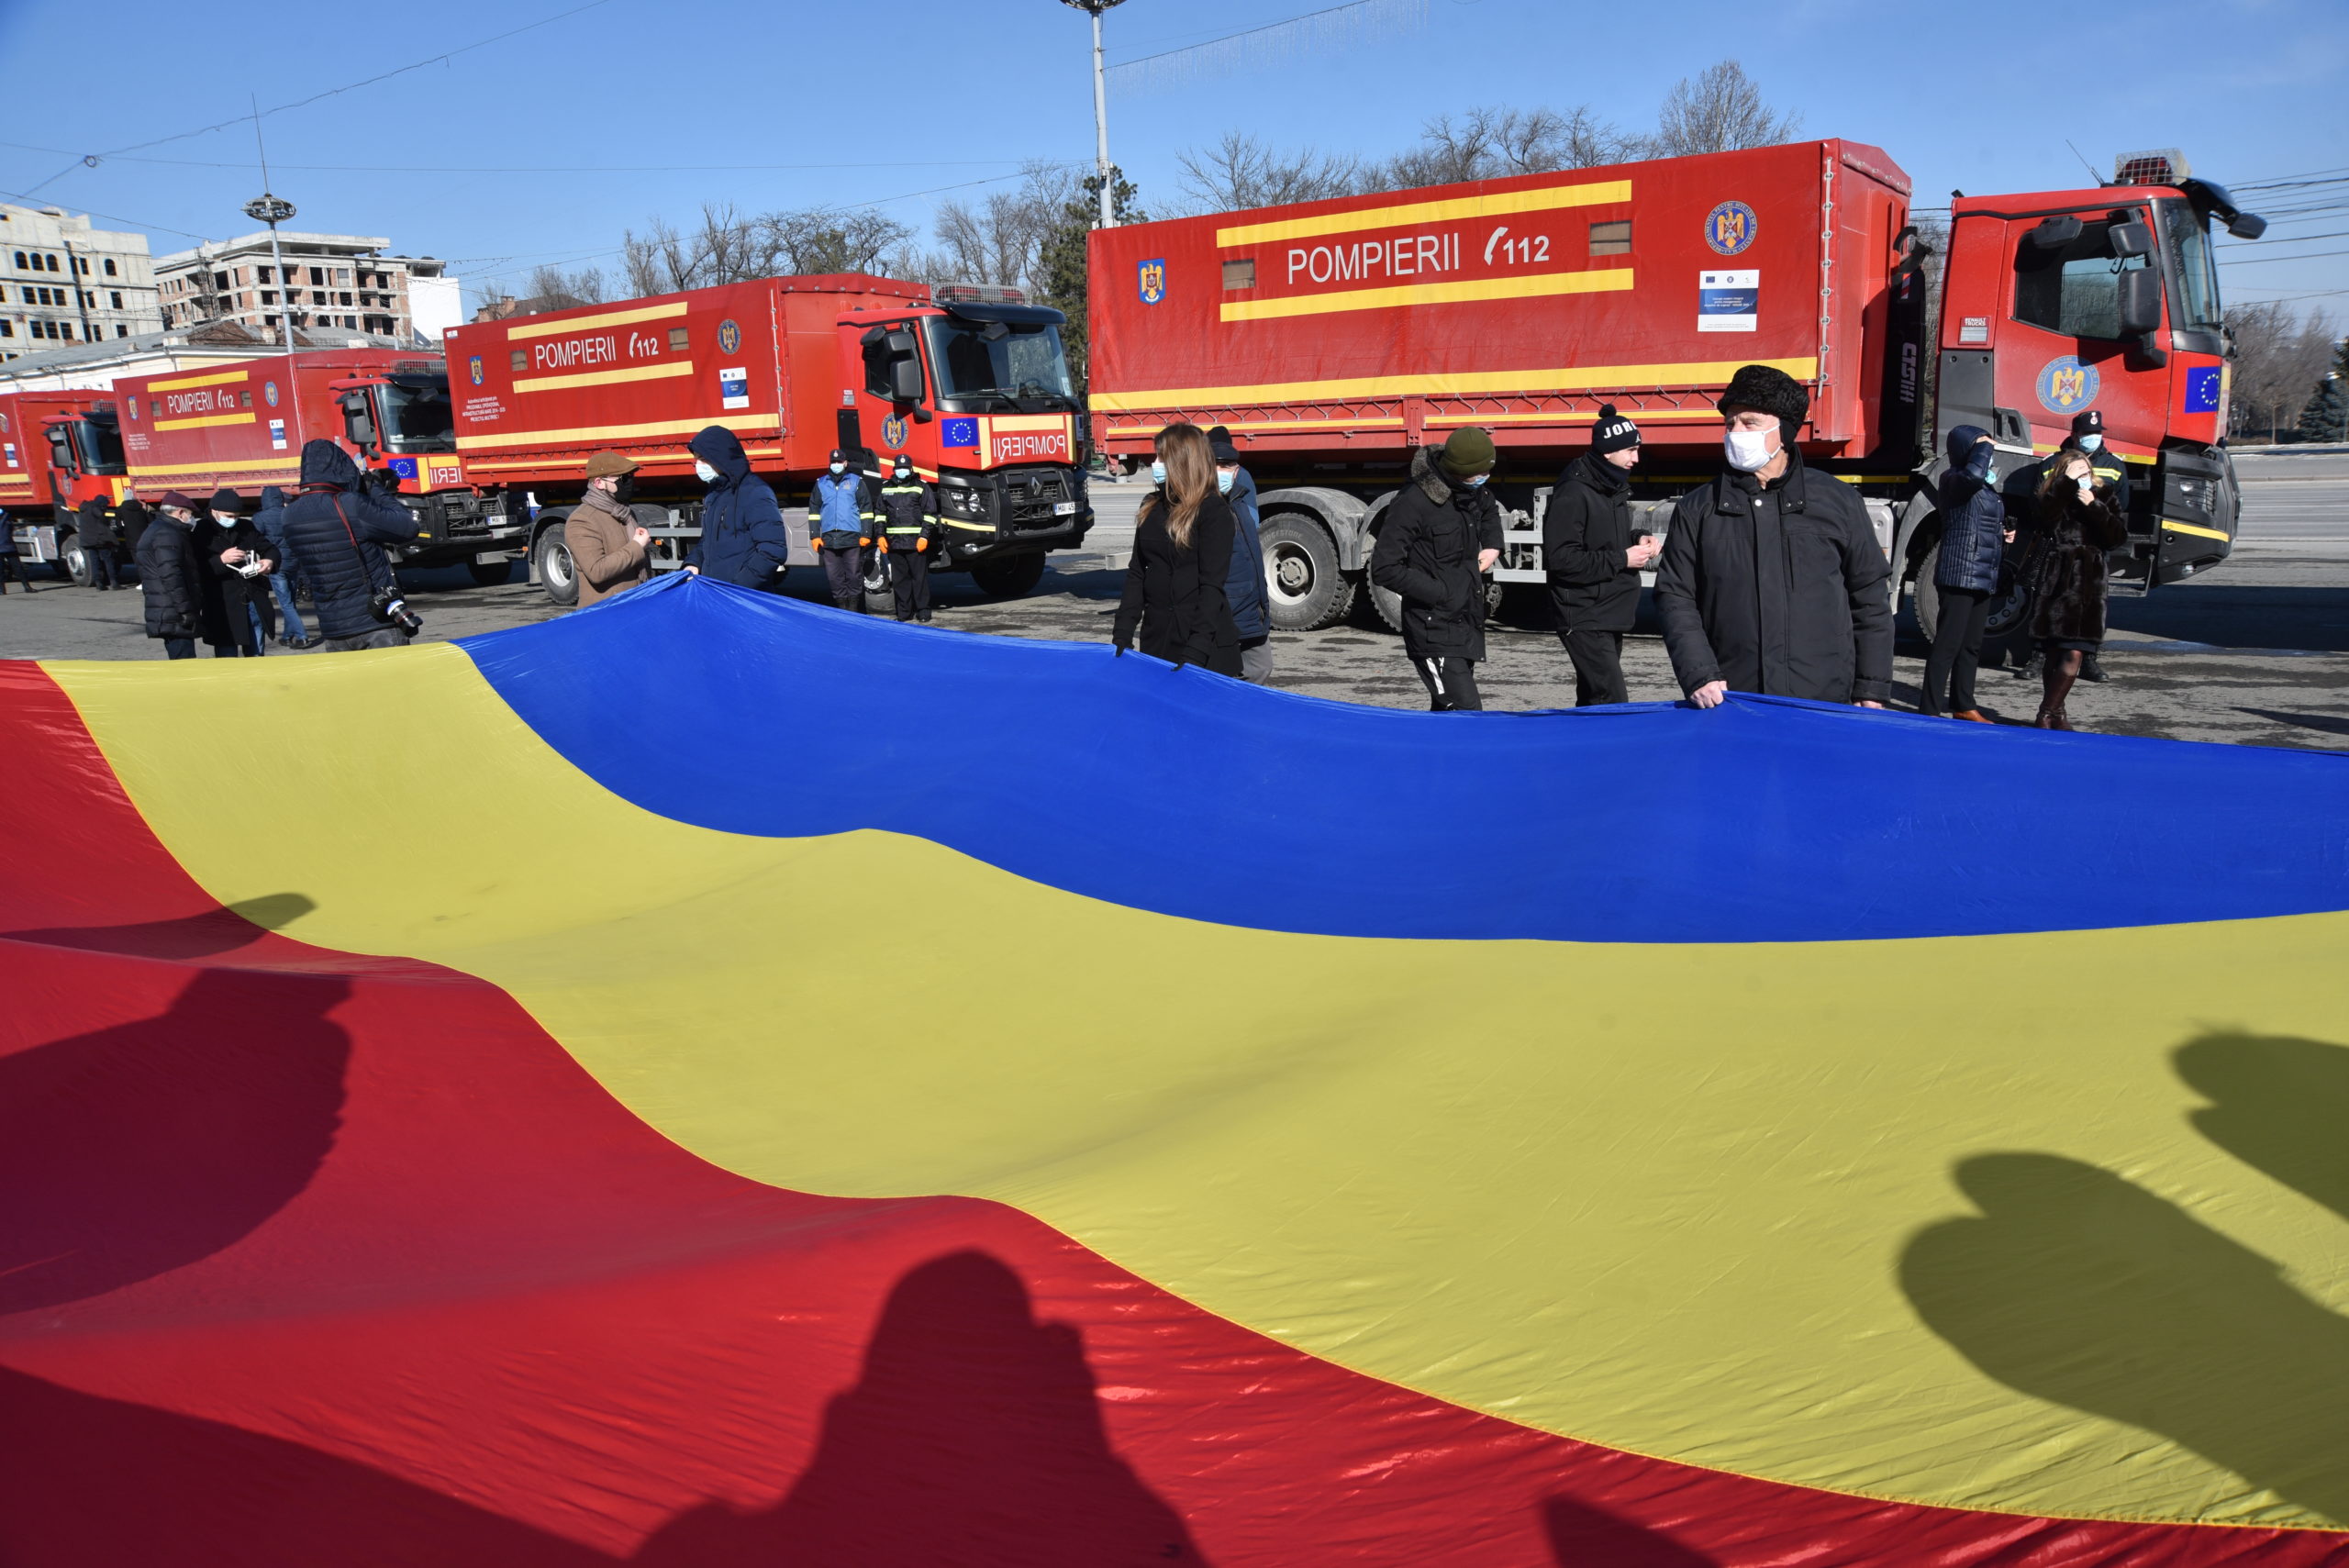 В Кишинев доставили гуманитарную помощь из Румынии. Фоторепортаж NM